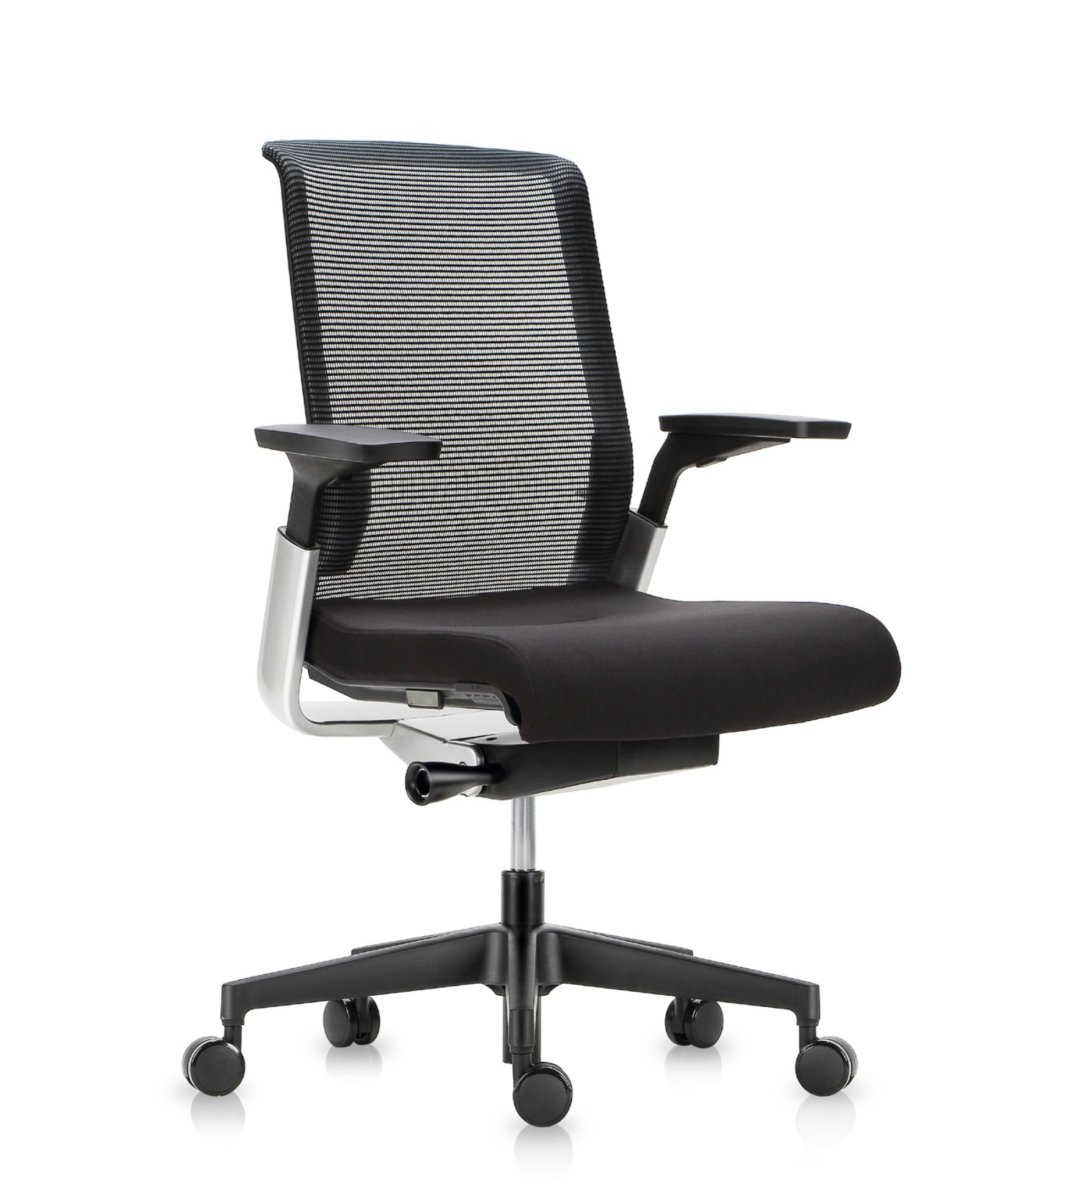 Match chair. Офисное кресло Match Light. Эргономичное офисное кресло дизайнер. Кресло Pegus с подлокотниками. Bartoli Design Match HB.